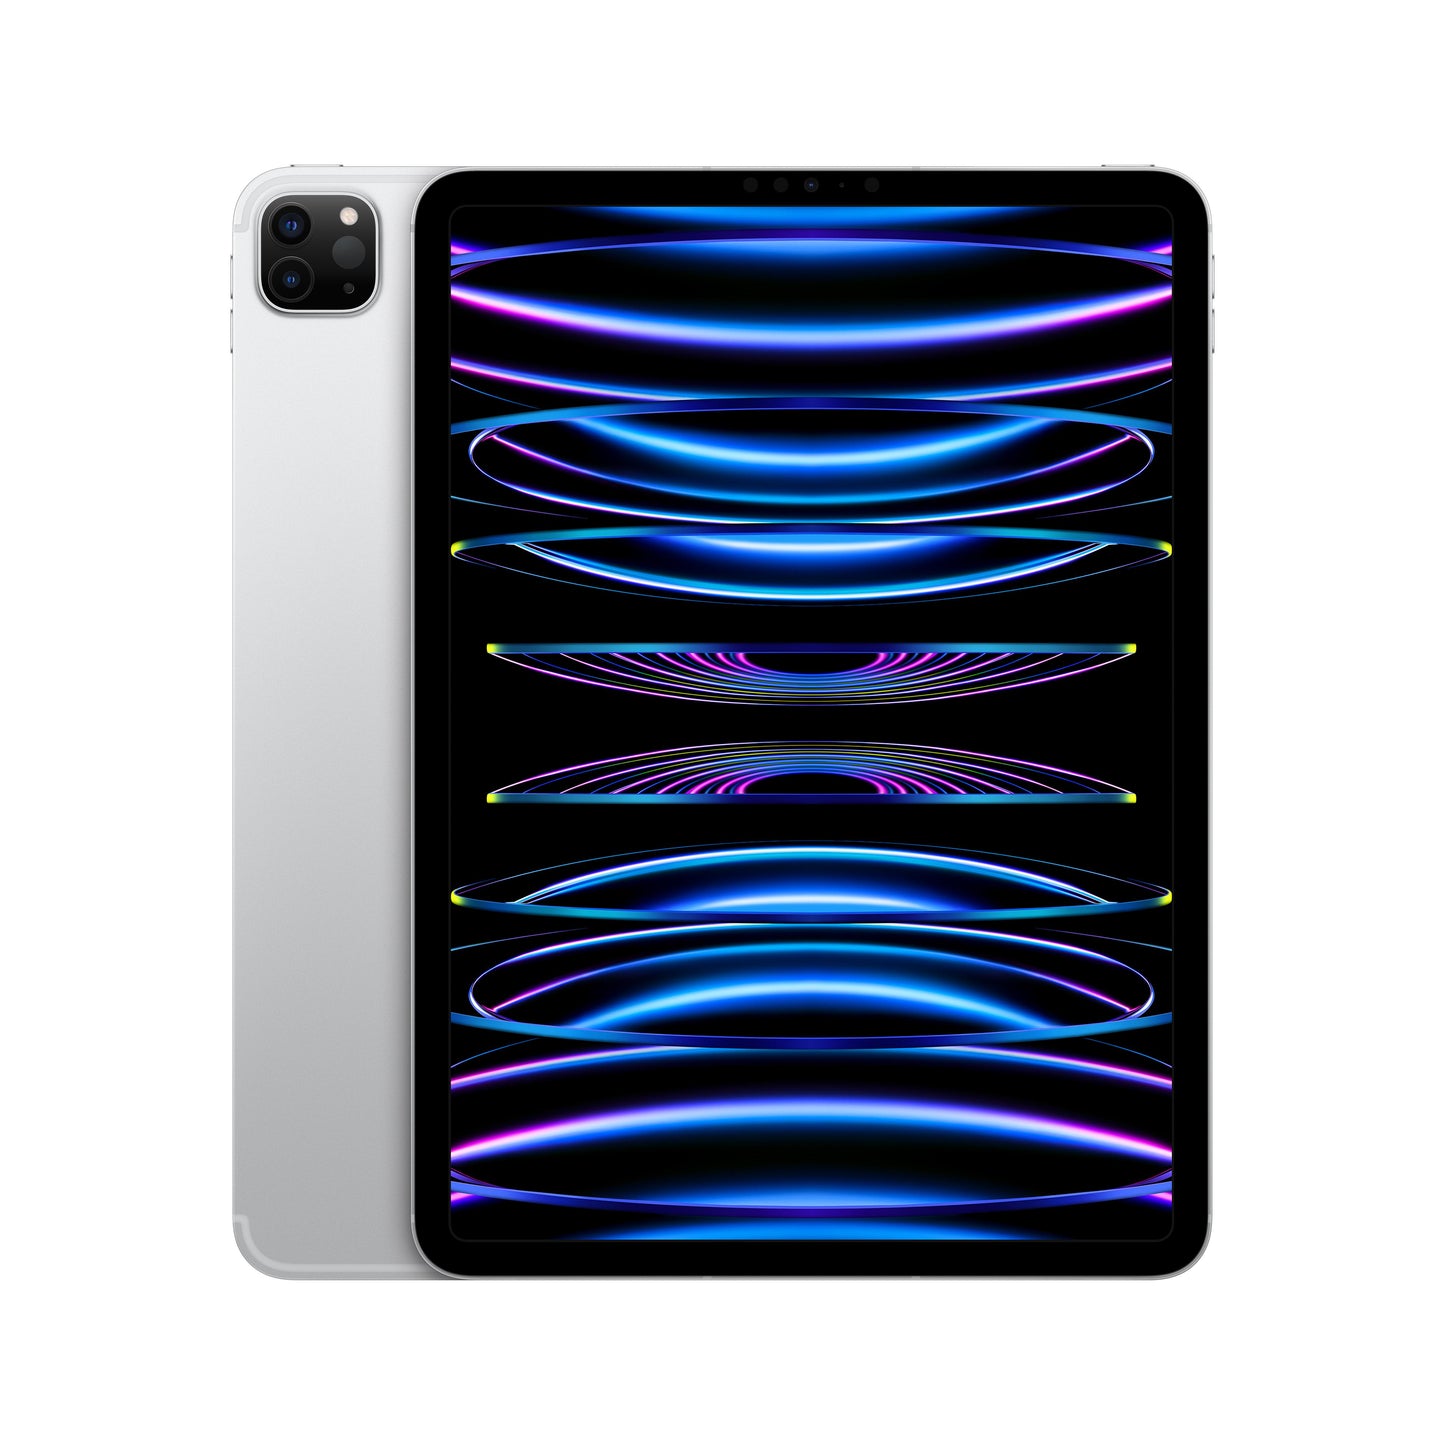 11-inch iPad Pro (4th Gen) Wi-Fi + Cellular 512GB - Silver